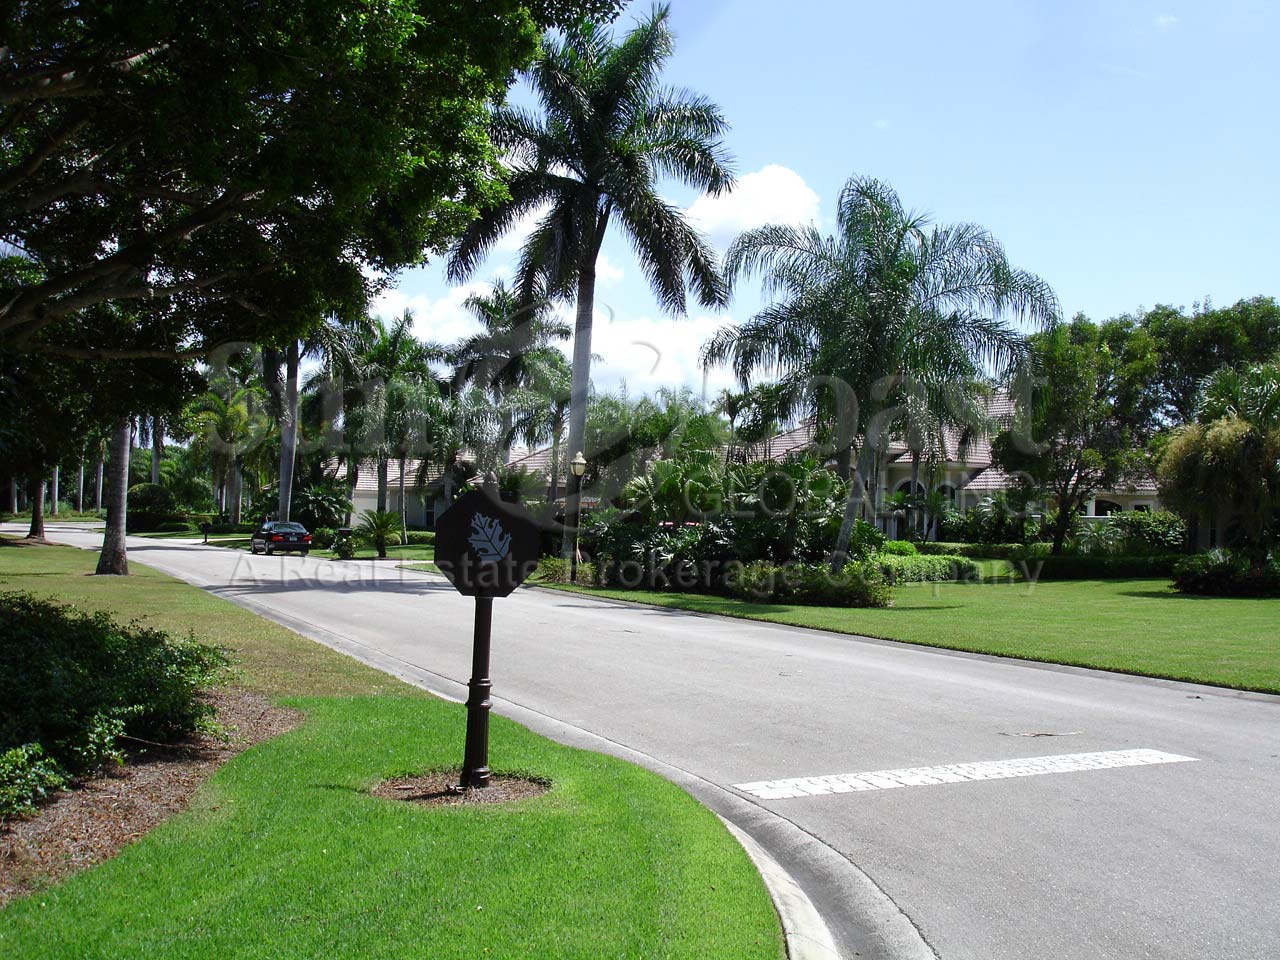 Palm Island neighborhood